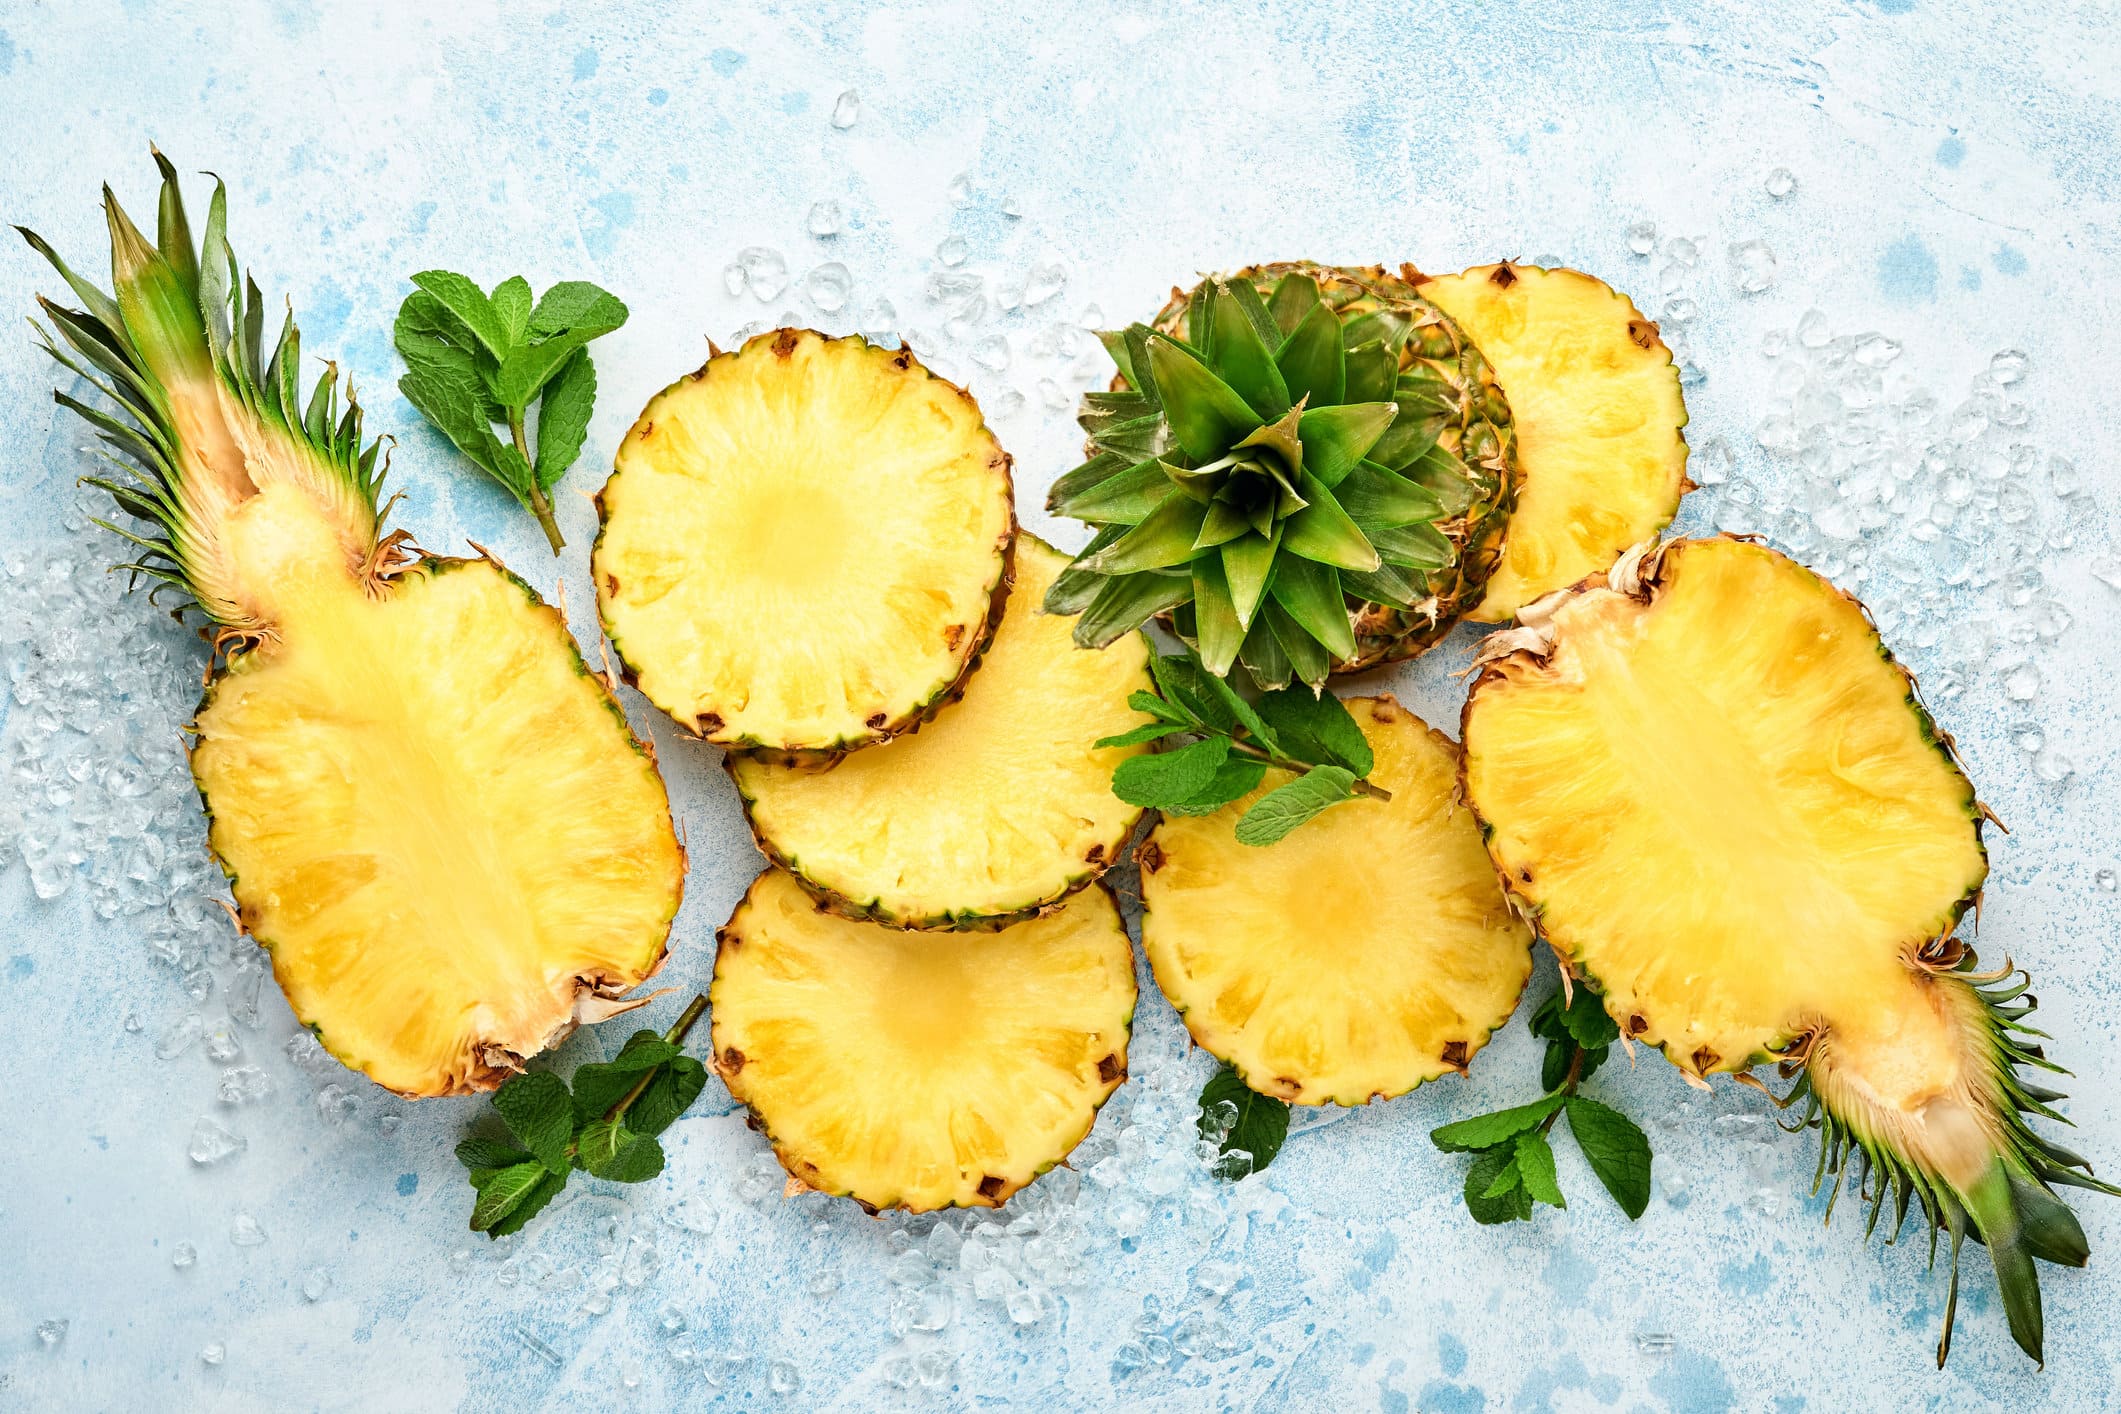 Exotische Frische: Ananas schneiden leicht gemacht